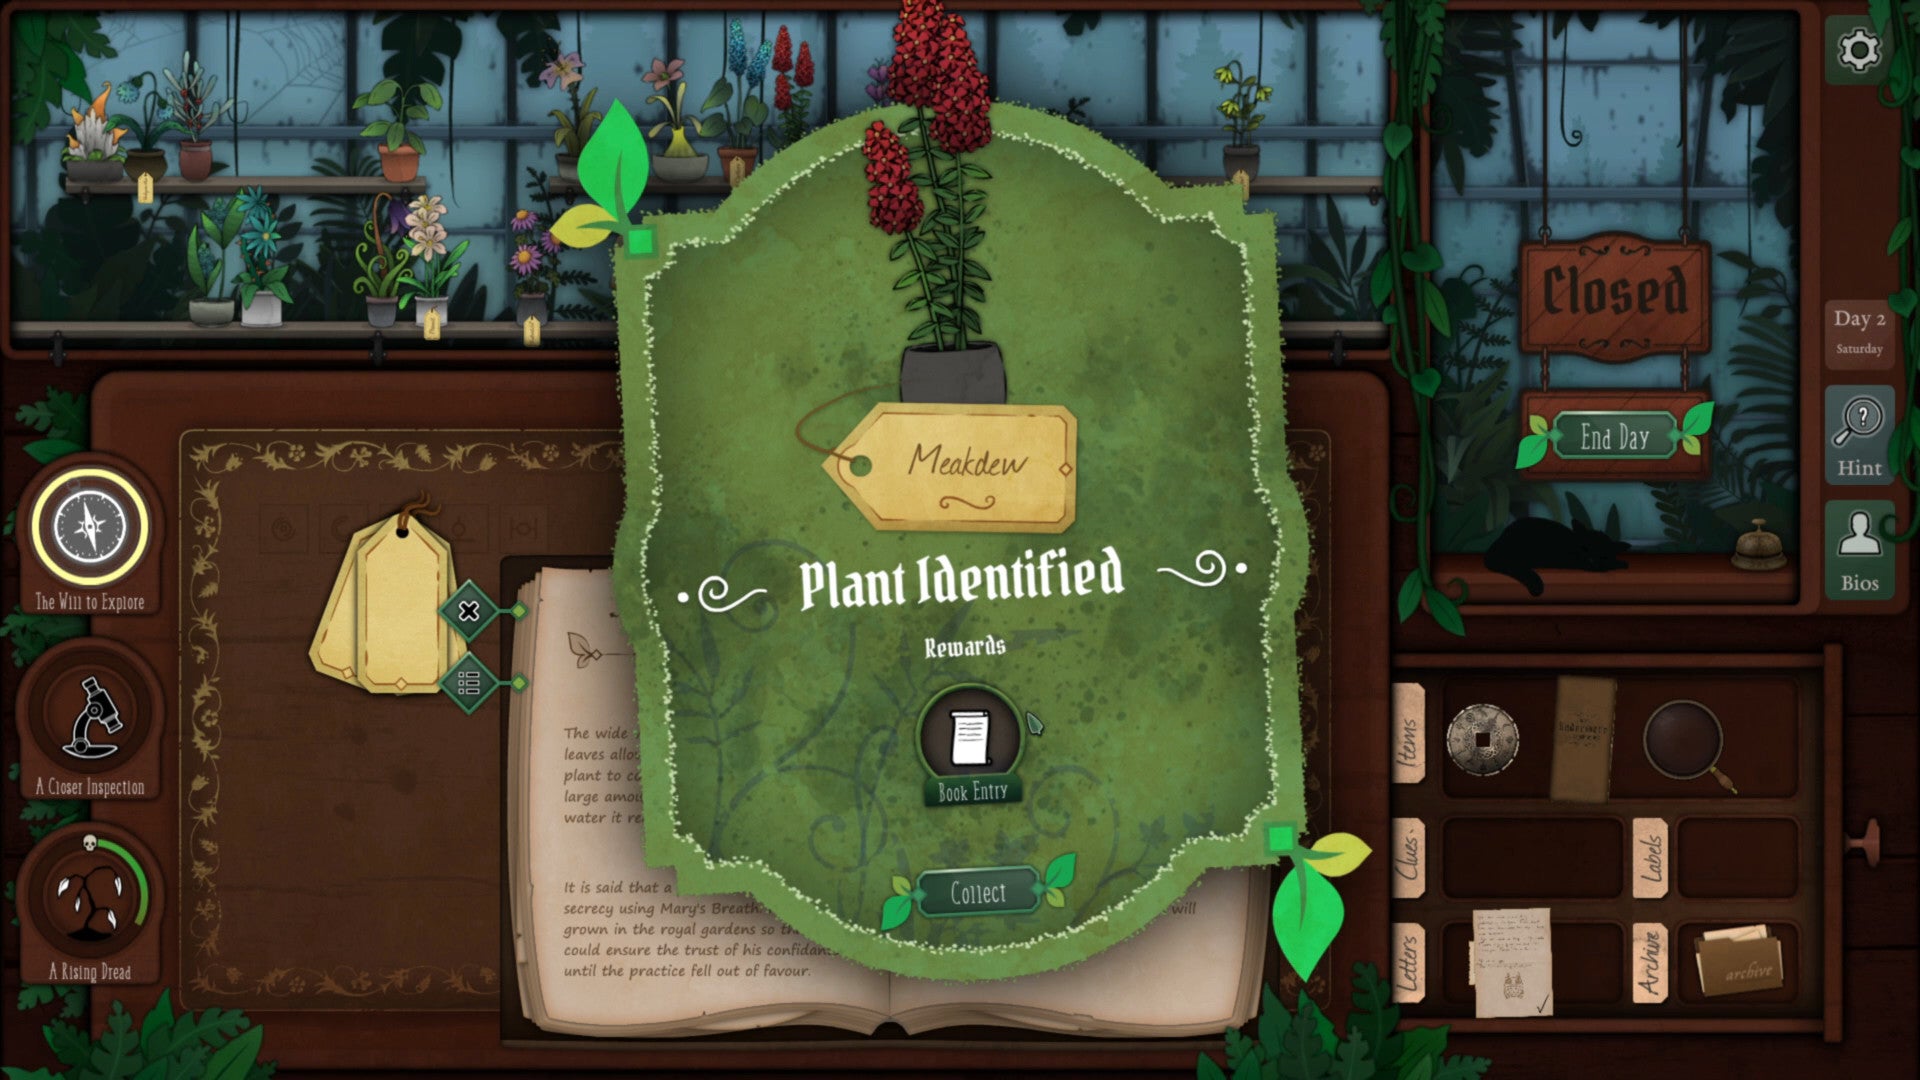 La pantalla principal de Strange Horticulture, que mostra el moment en què el jugador identifica correctament una planta (Meakdew).  Al fons, és un dia trist vist des dels aparadors d'una botiga plena de plantes, i un gat negre dorm en un taulell a la dreta.